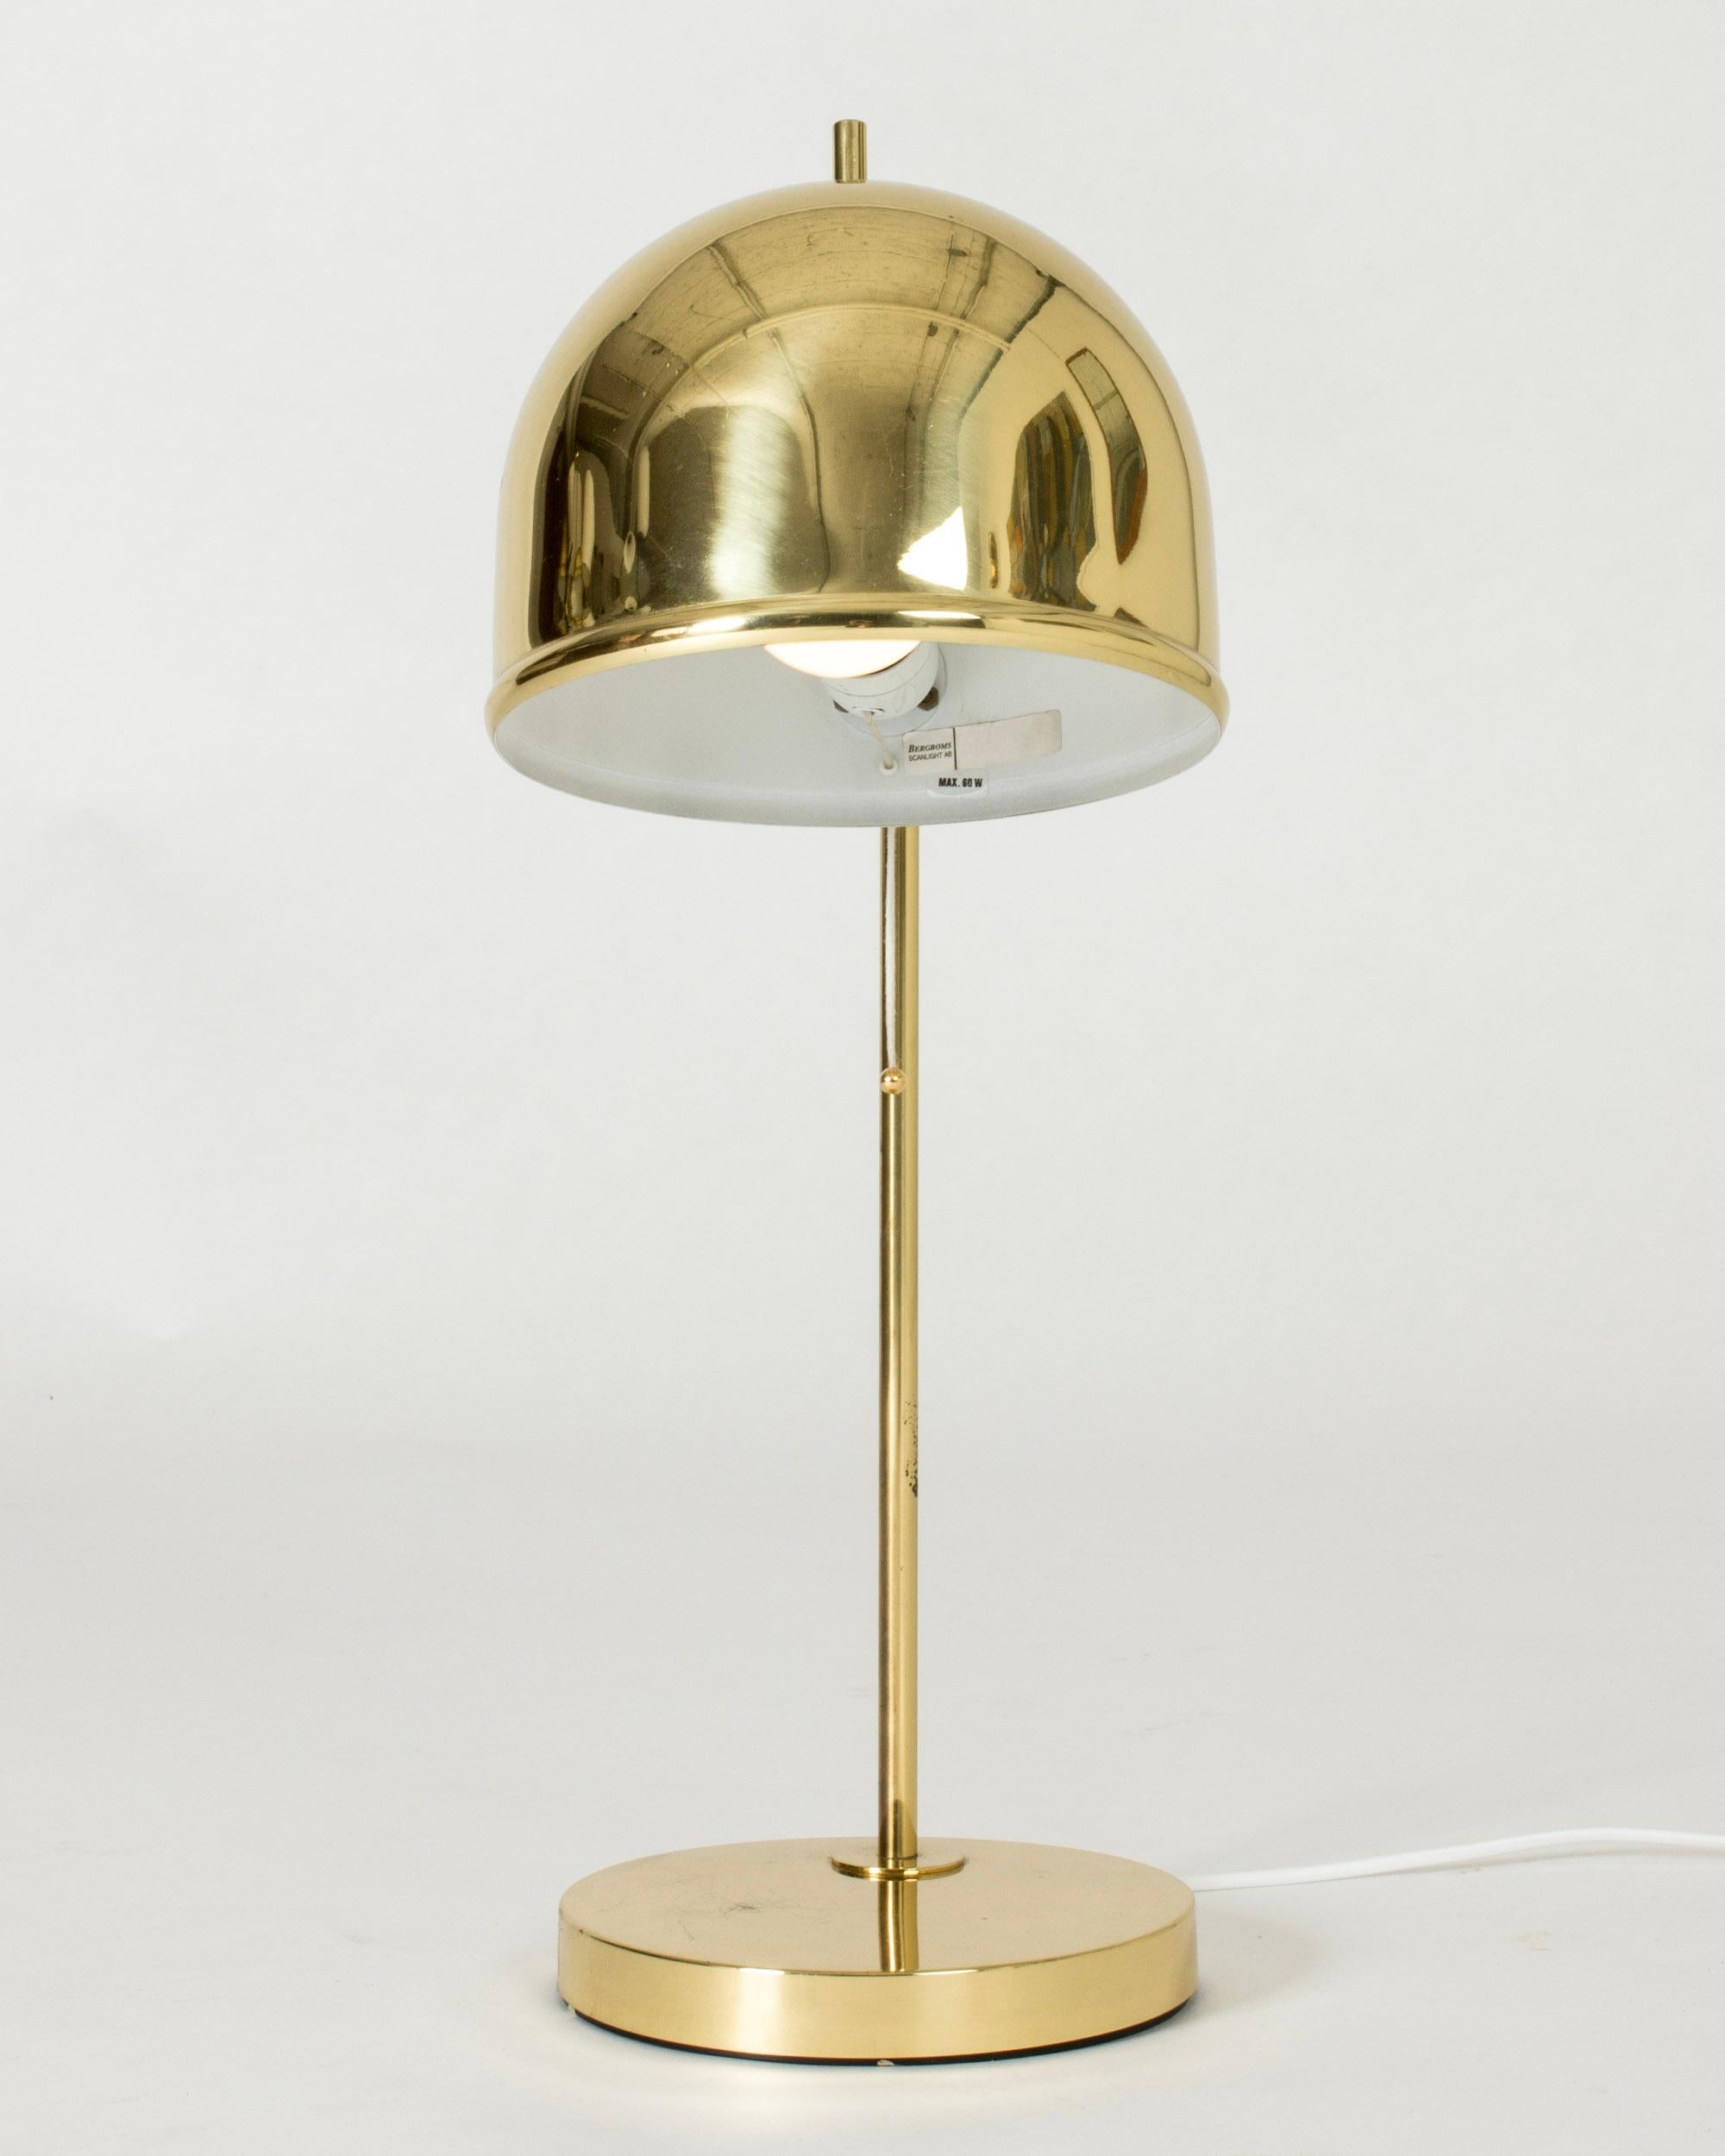 Lampe de table en laiton de Bergboms avec un abat-jour en forme de dôme et des lignes strictes. La petite pointe sur le dessus de l'abat-jour est un détail amusant.